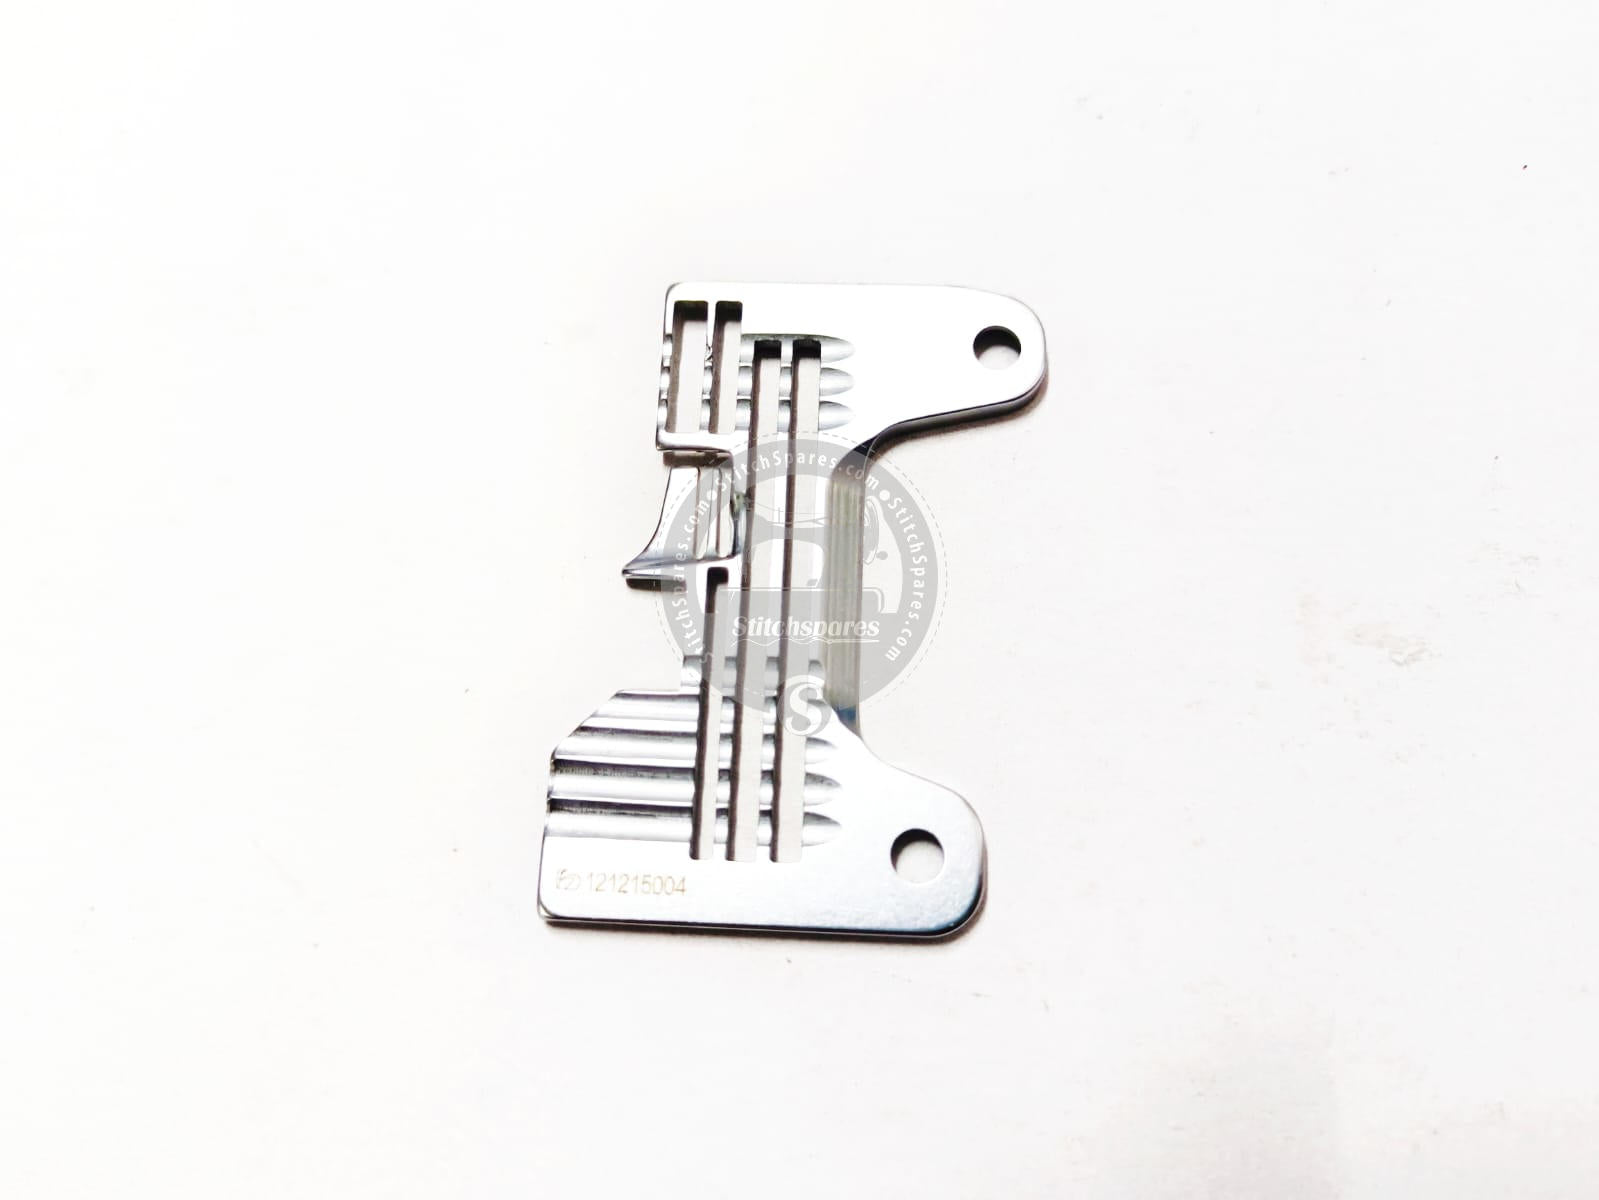 Placa de aguja JACK E4S (PIEZAS ORIGINALES DE JACK) Pieza de repuesto para máquina de coser Overlock N.º DE PARTE: 121215004